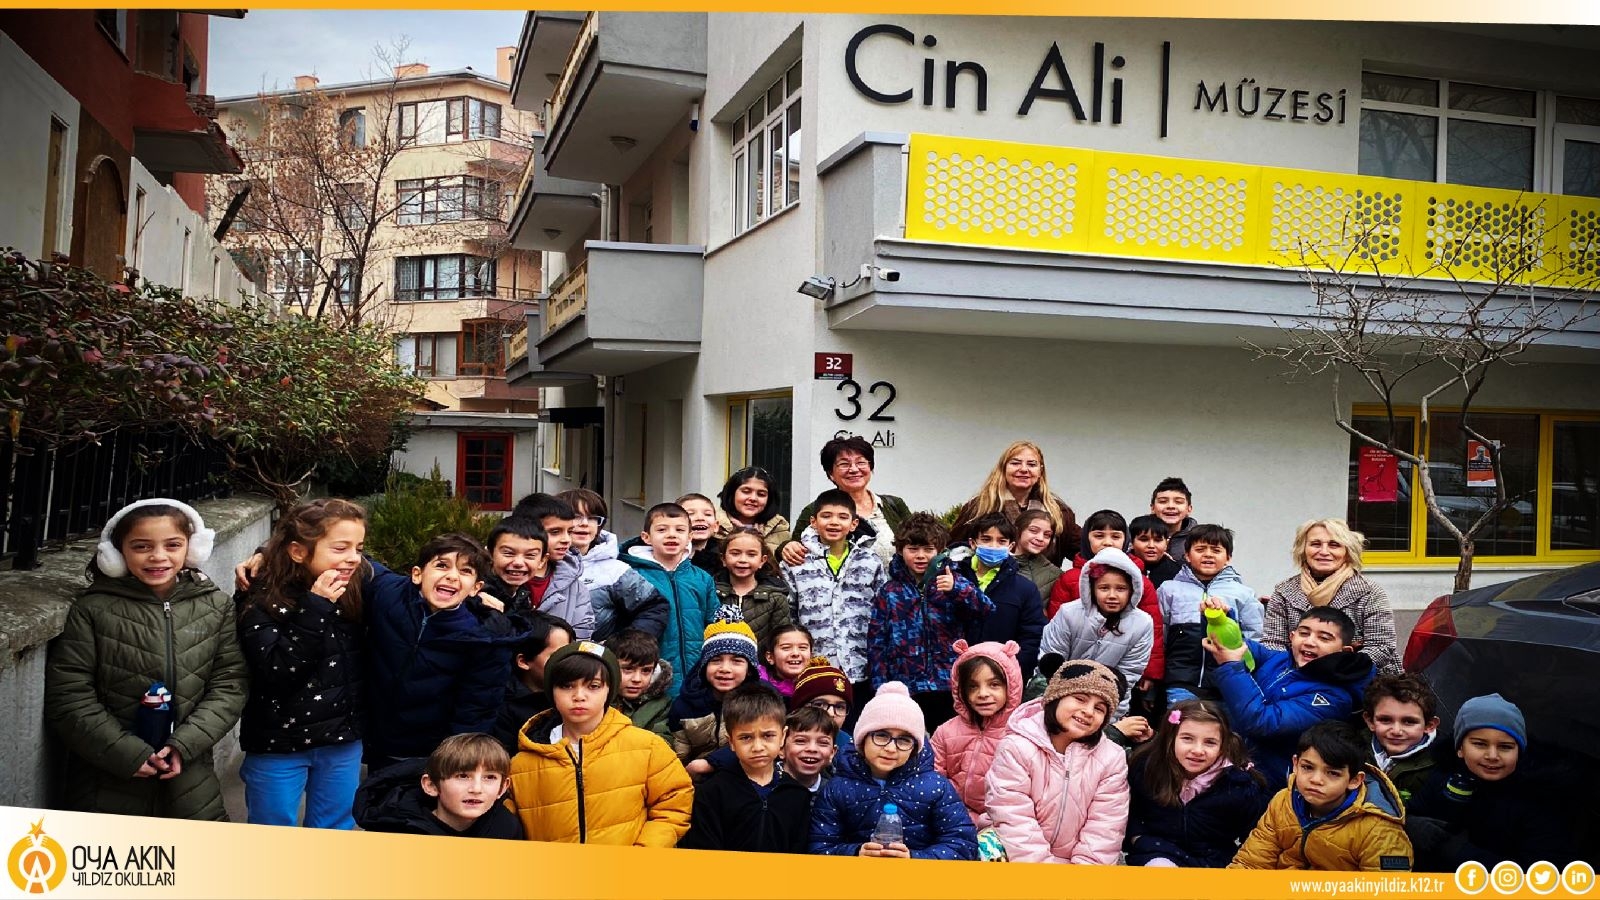 Portakal Çiçeği İlkokulu Cin Ali Müzesi'ni Ziyaret Etti